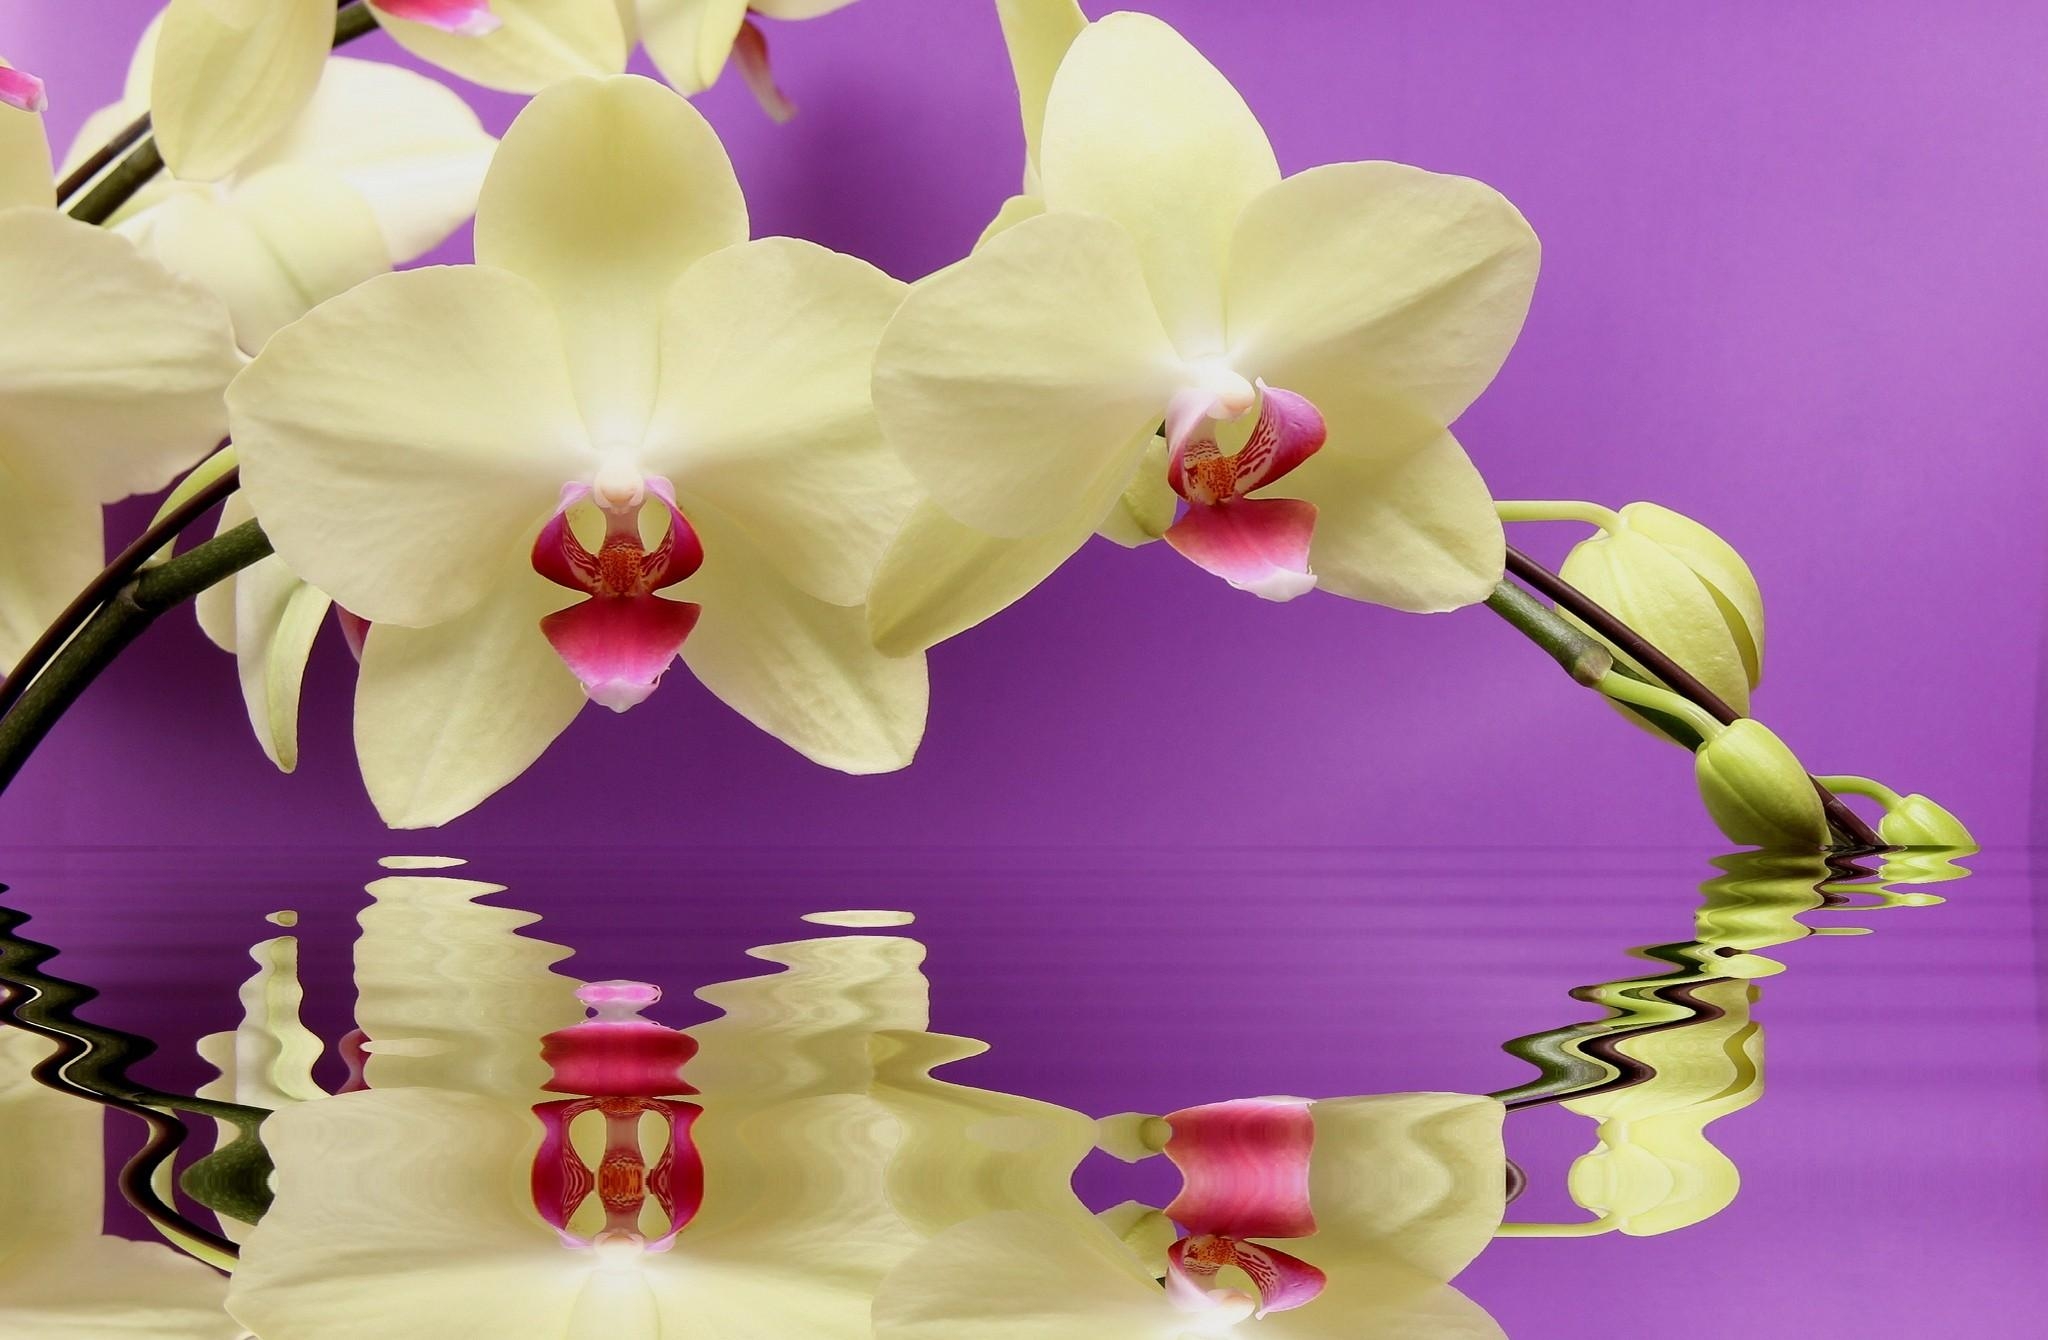 Скачать обои бесплатно Орхидея, Отражение, Вода, Ветка, Цветы картинка на рабочий стол ПК